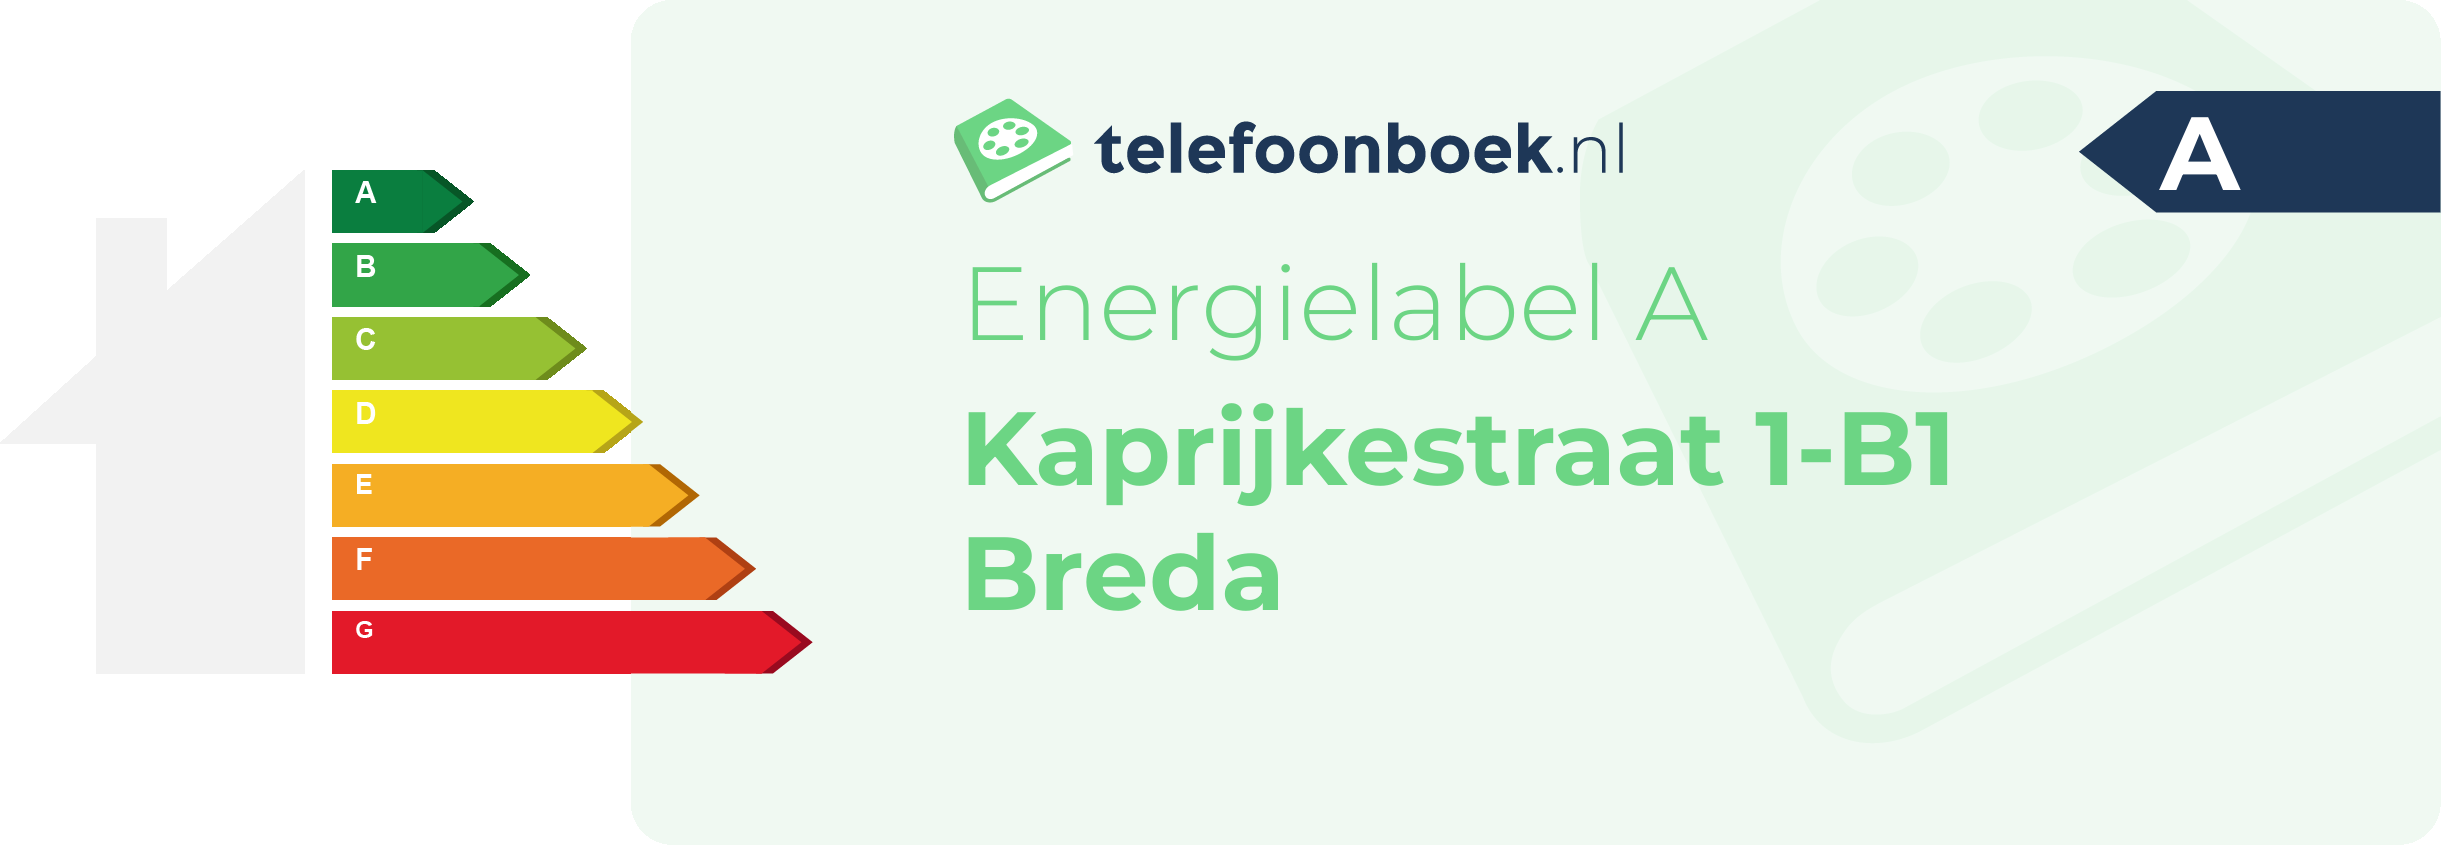 Energielabel Kaprijkestraat 1-B1 Breda